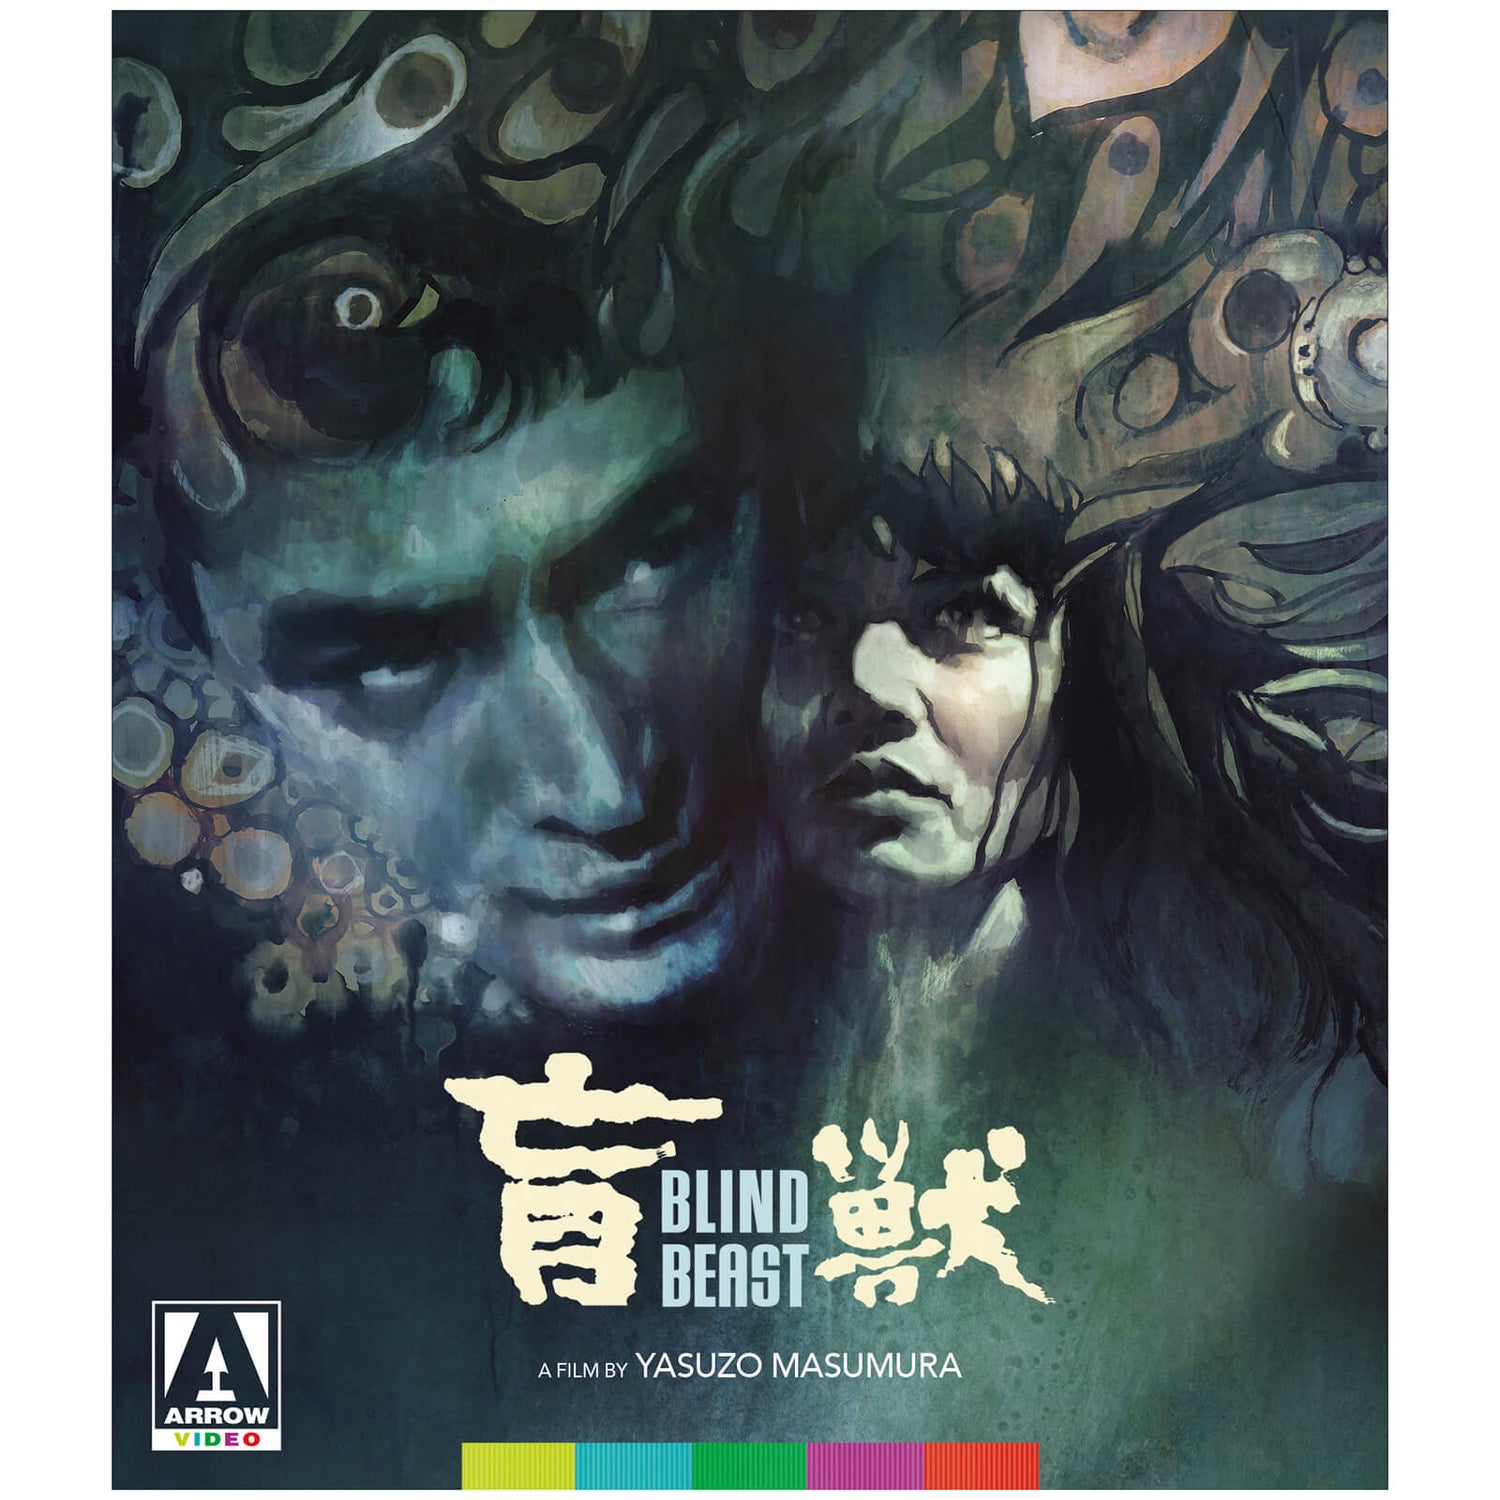 Blind Beast Blu-ray